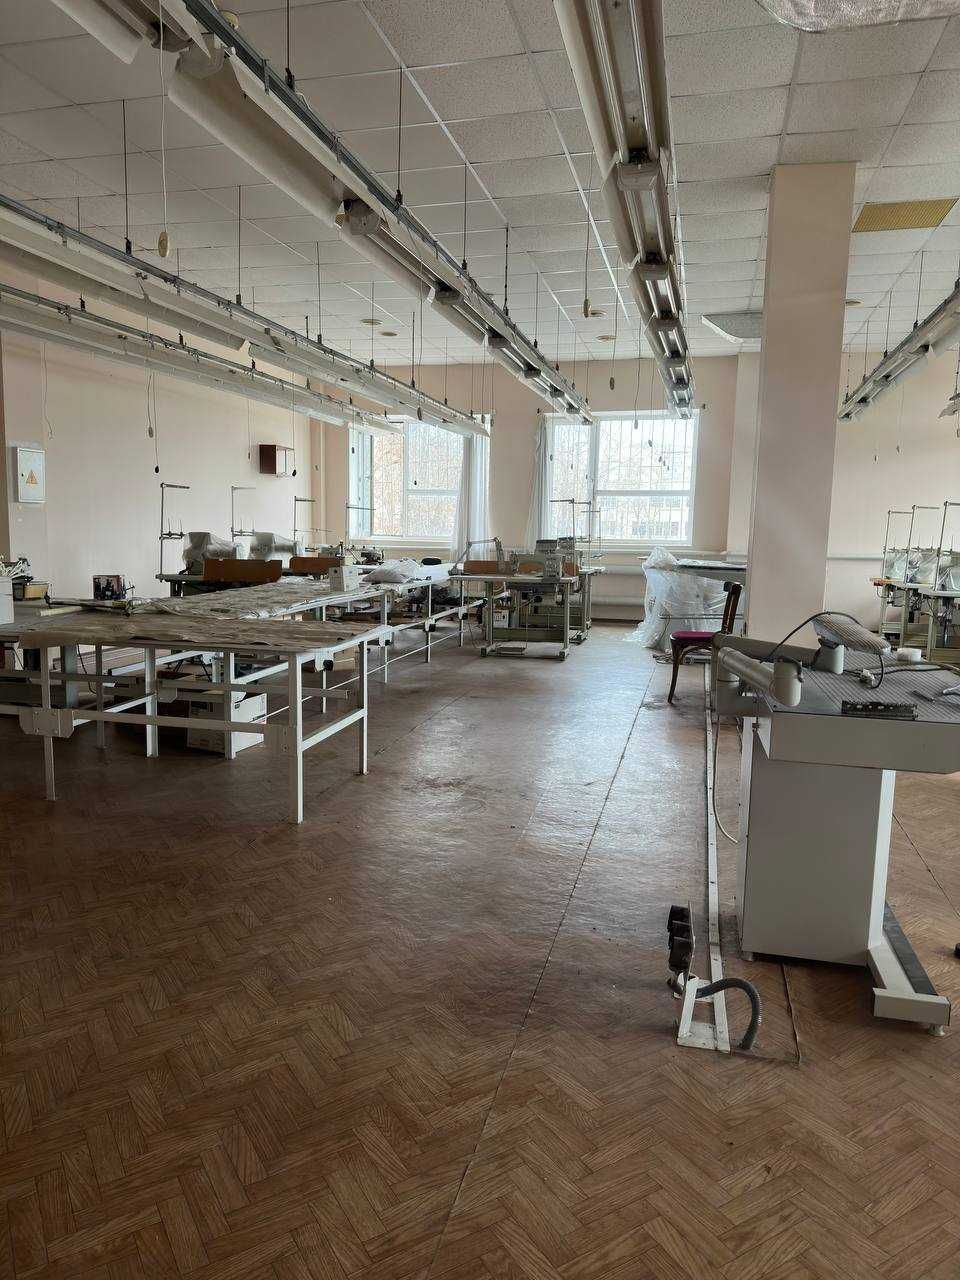 Действующая швейная фабрика в центре Поселка Котовского. 1V7